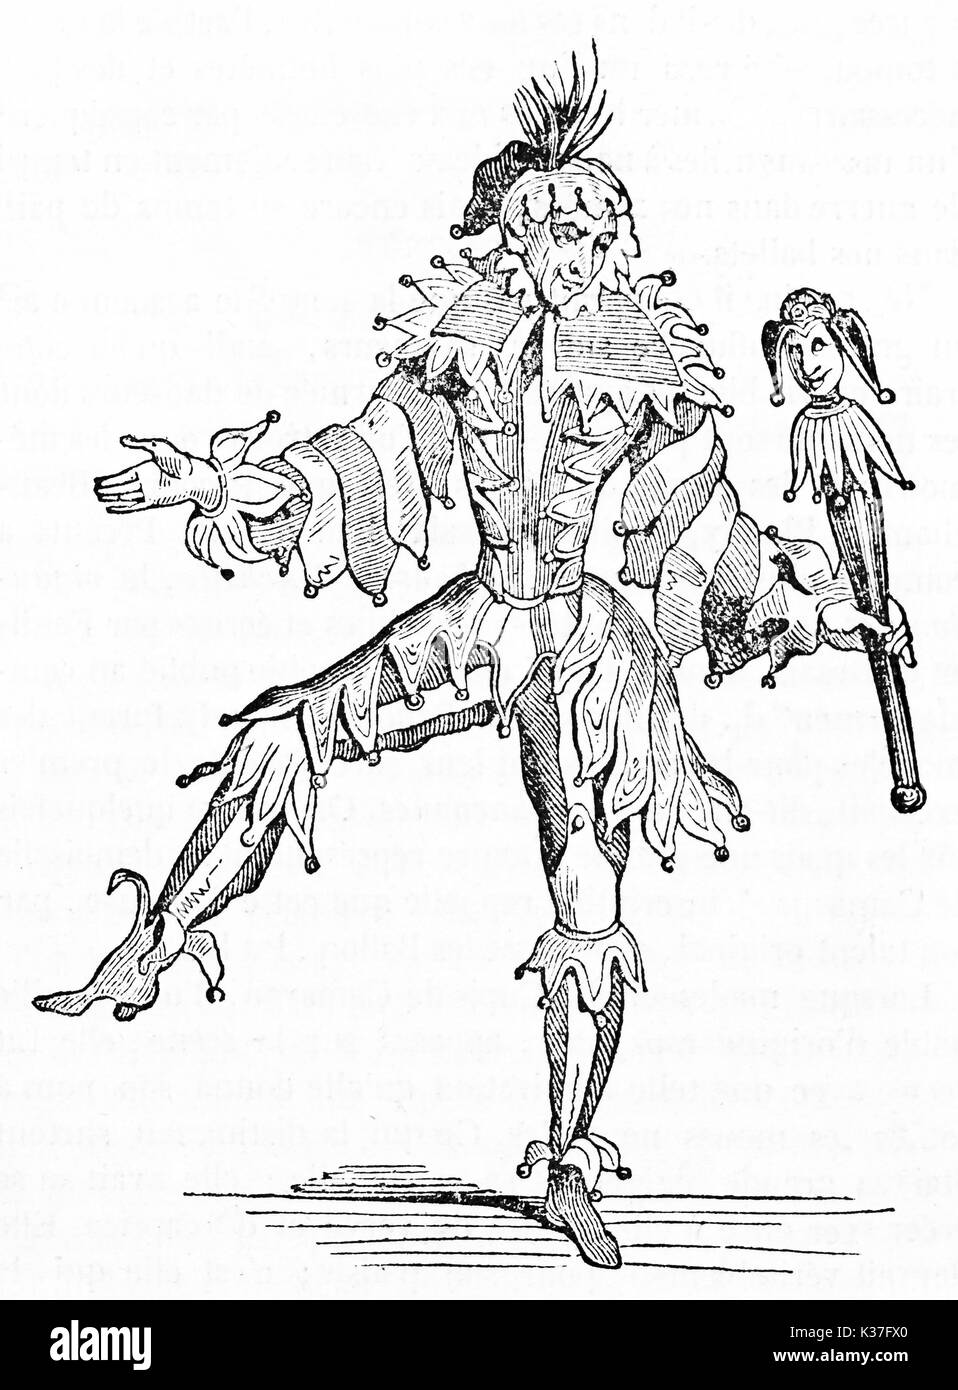 Jester ancien posant sur une jambe portant son costume et tenant un sceptre. Vieille Illustration d'auteur non identifié publié le magasin pittoresque Paris 1834 Banque D'Images